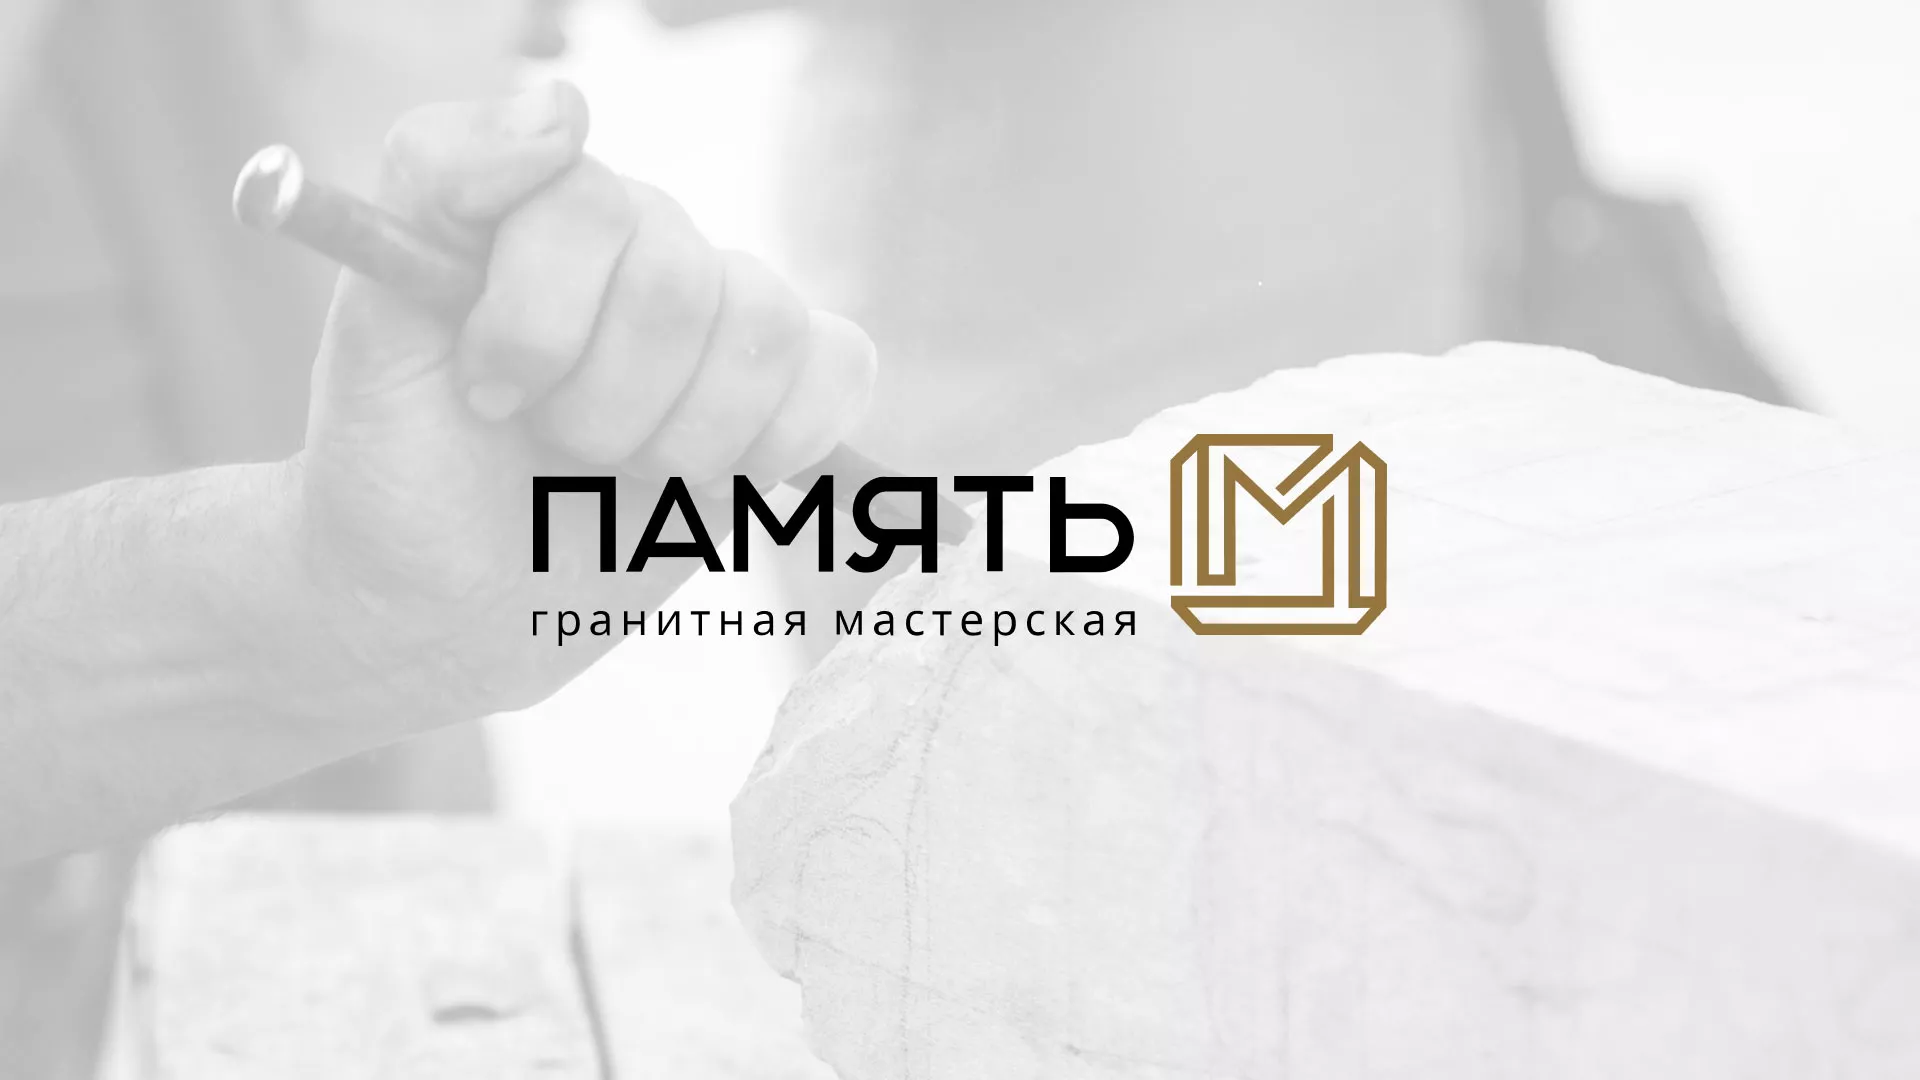 Разработка логотипа и сайта компании «Память-М» в Андреаполе